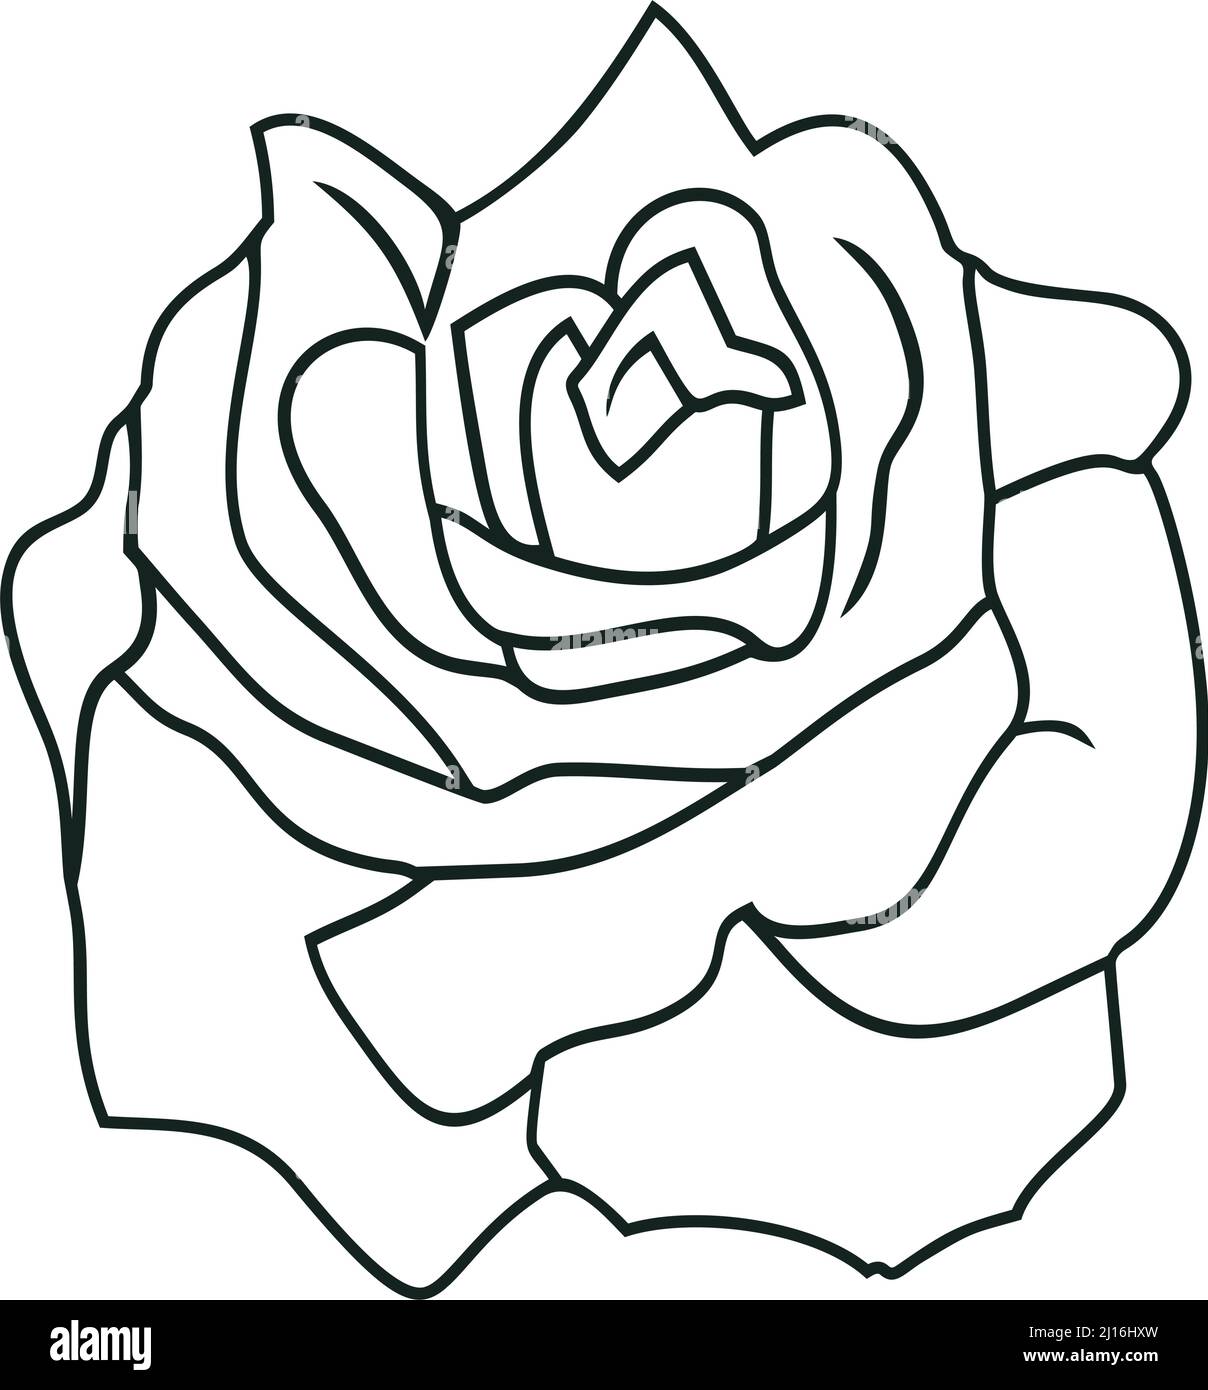 Flor de vector rosa con contorno abstracto en negro. Fondo blanco aislado.  Ilustración de flor de rosa en diseño de silueta de contorno Imagen Vector  de stock - Alamy